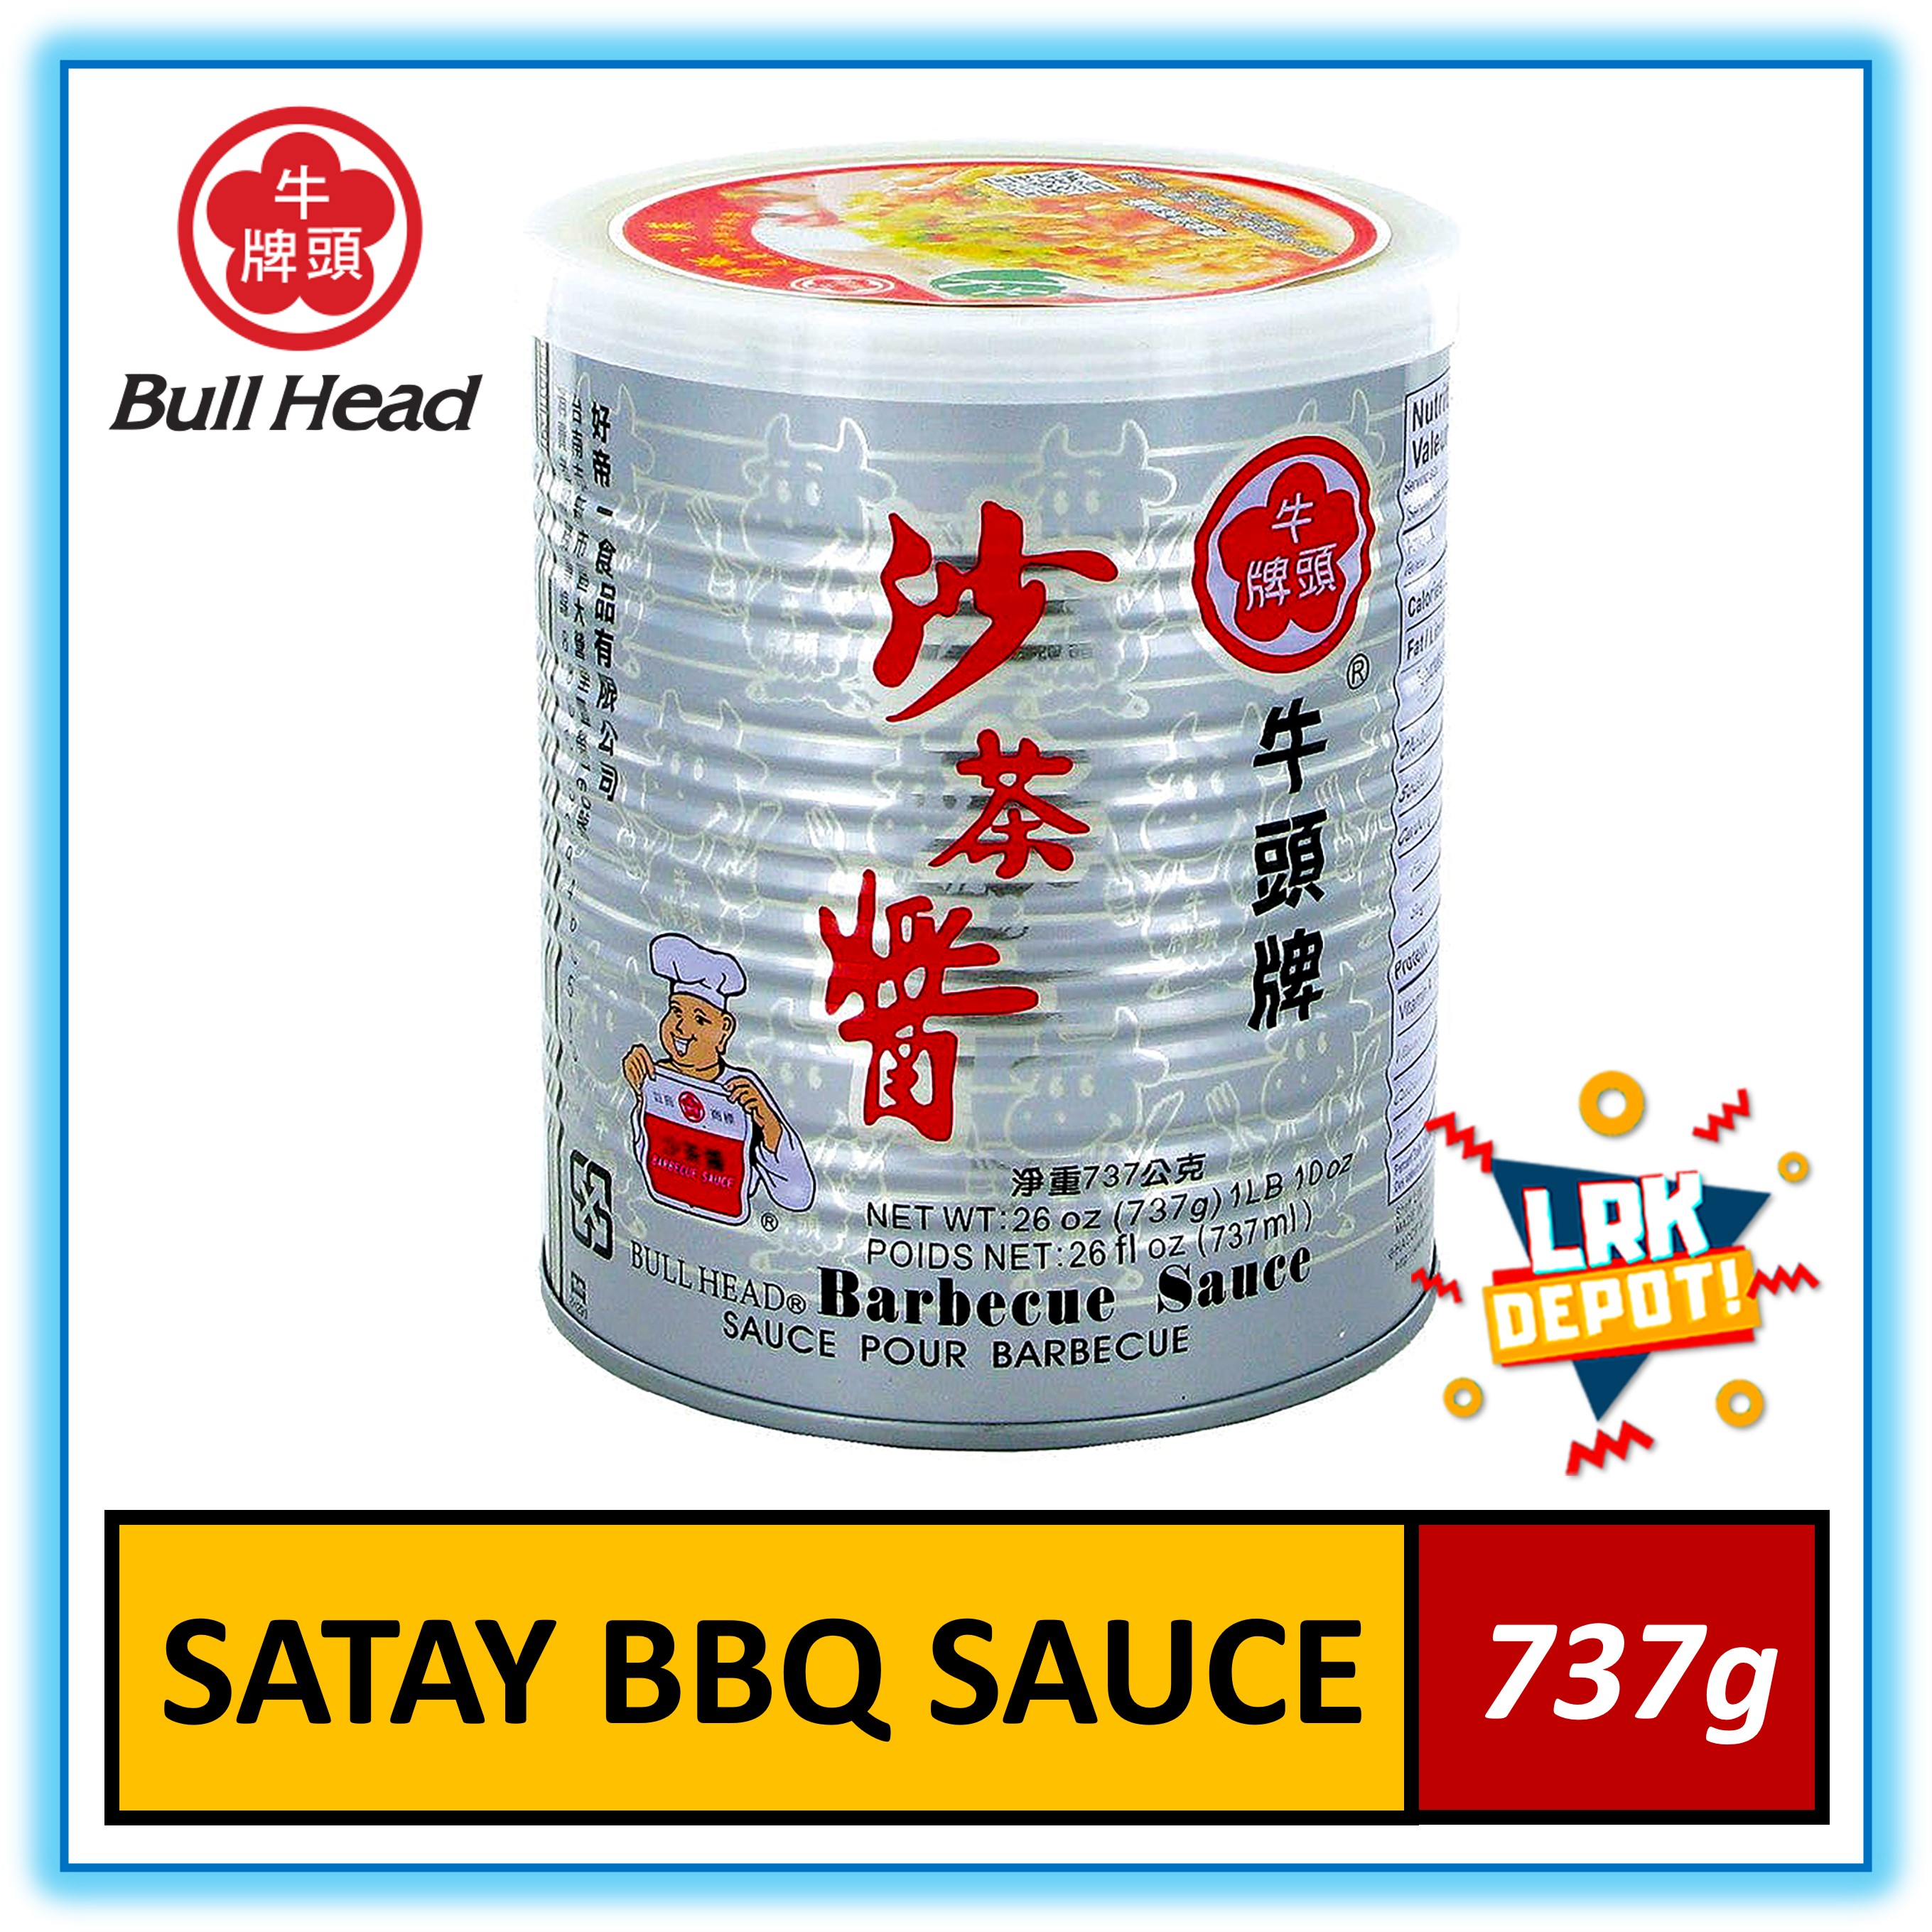 Bull Head Shallot Sauce - 26 oz  Sauce, Barbecue sauce, Dipping sauce